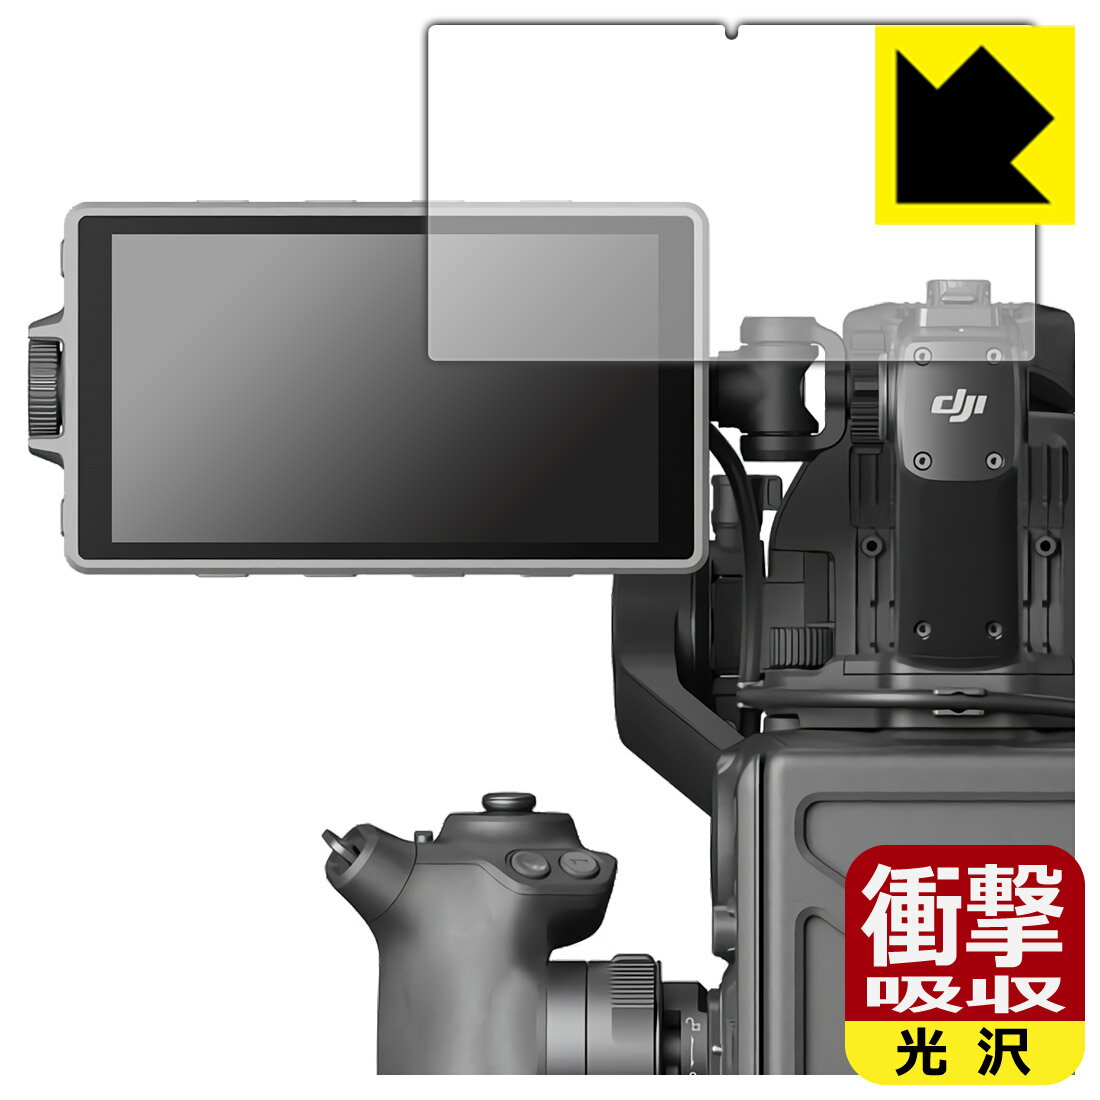 衝撃吸収【光沢】保護フィルム DJI Ronin 4D 高輝度メインモニター 日本製 自社製造直販